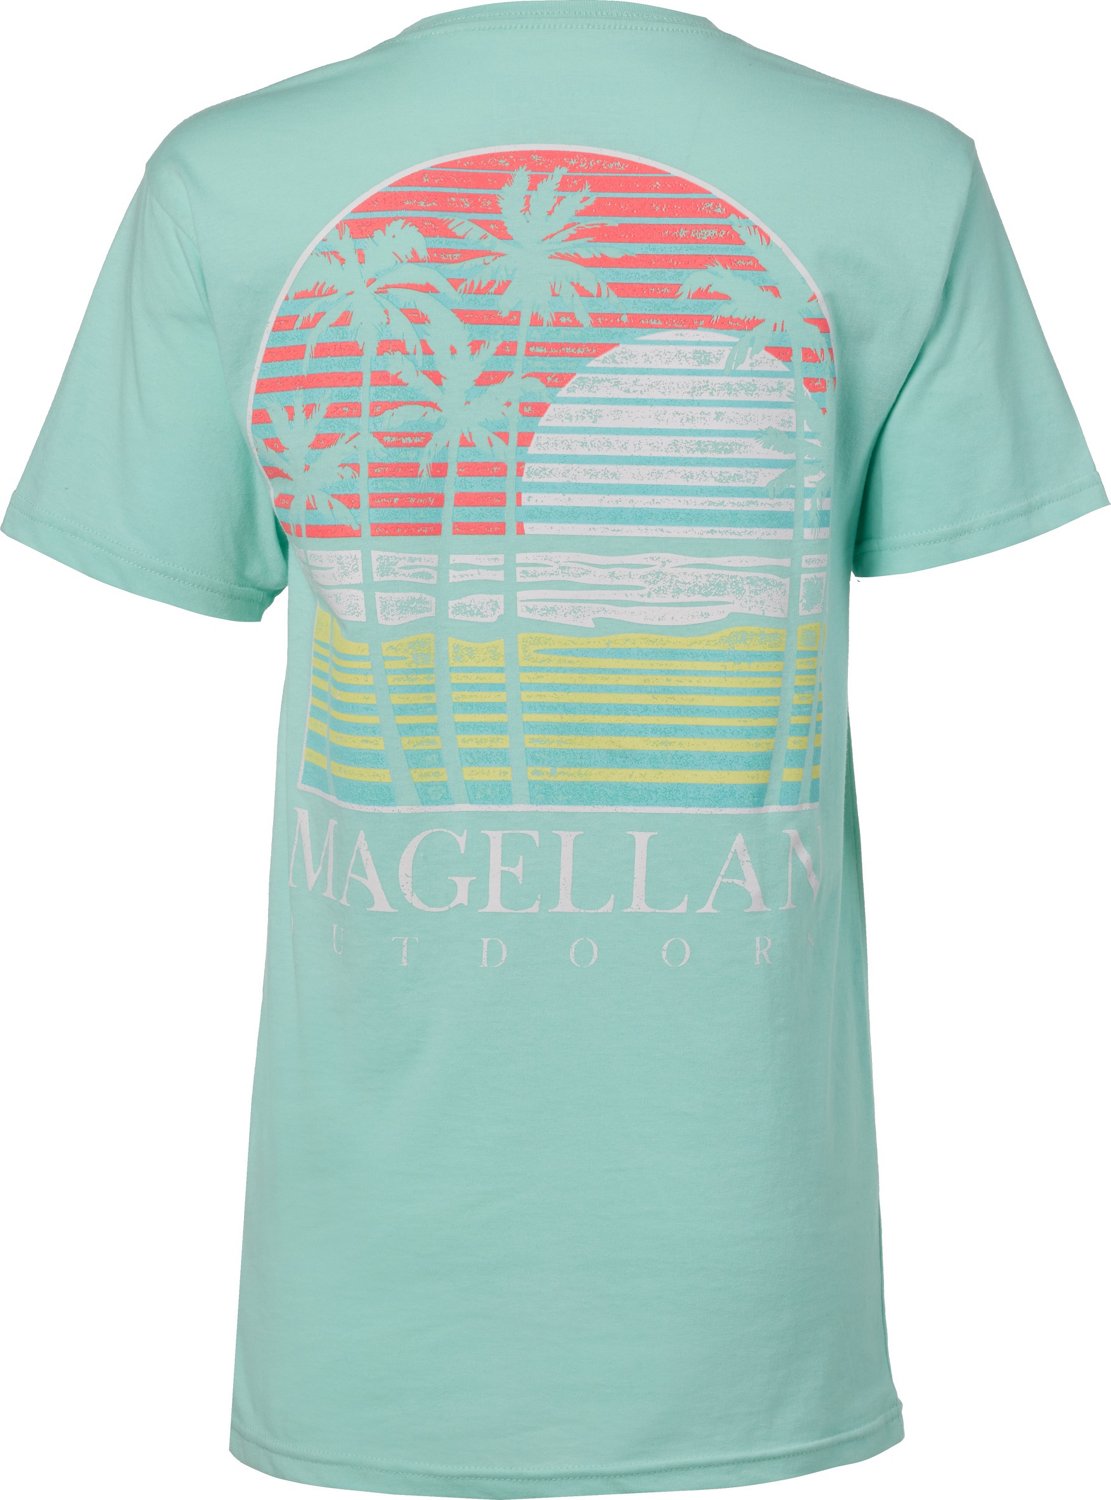 Magellan Outdoors Women's Southern Beach T-shirt | Academy